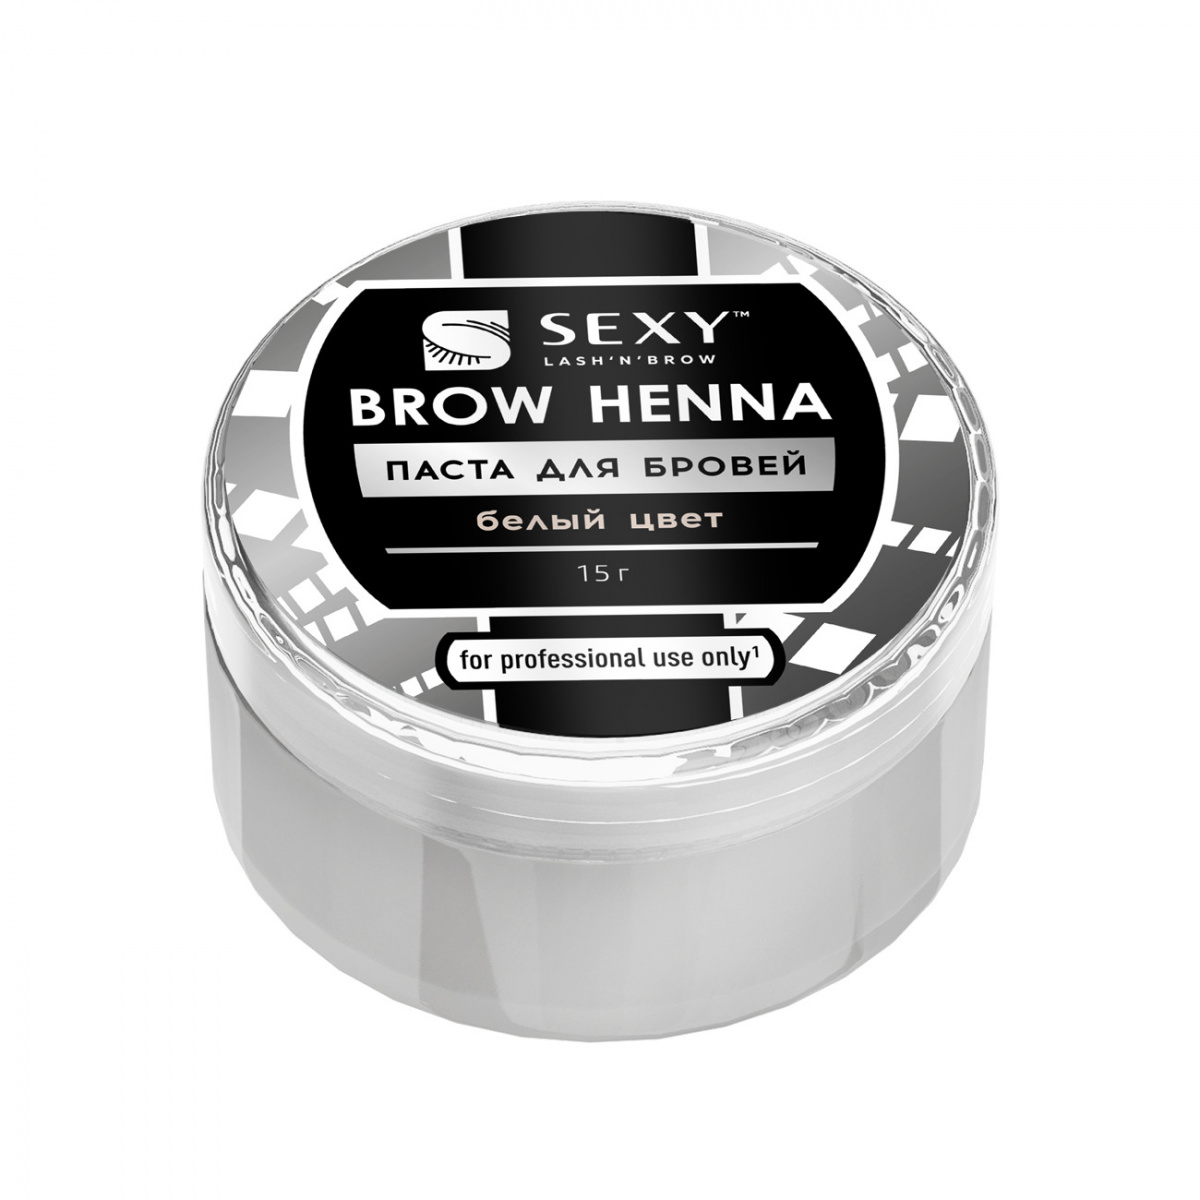 Паста для бровей SEXY BROW HENNA, белый цвет, 15 гр